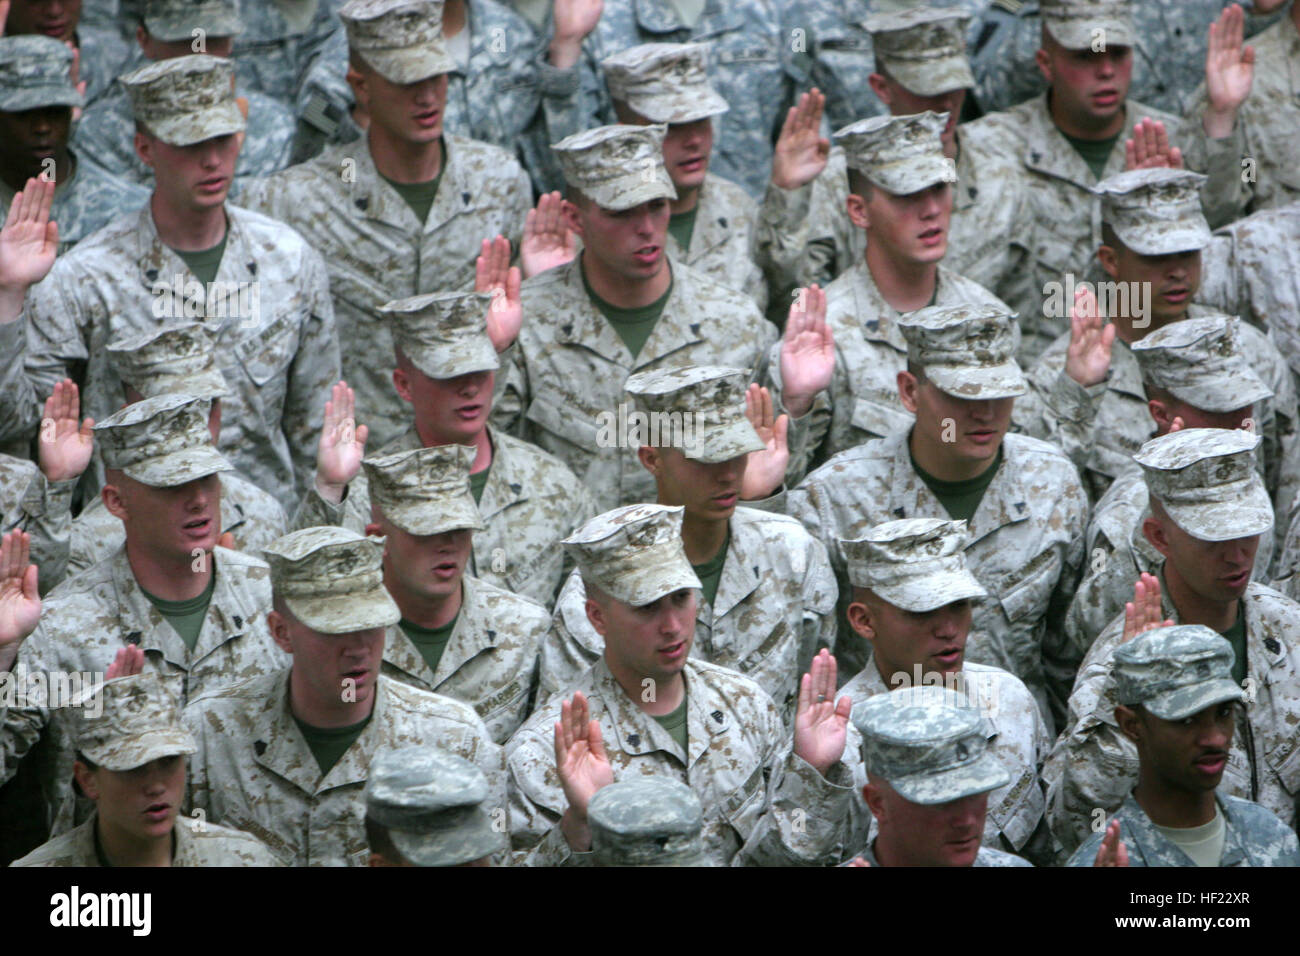 Mehr als 40 Marines und Segler aus verschiedenen Einheiten zugewiesen, 3rd Marine Aircraft Wing, hob ihre Hand gelegen die Eid Eintragung während einer Masse Zeitsoldat Zeremonie im Al-Faw Palace in Bagdad, Juli 4. Die Zeremonie wurde von Armee-General David Petraeus, Kommandeur der Multi-National Force - Irak, die mehr als 1.200 total Soldat innen reitet, die an der Zeremonie teil. Kommandeur der Truppen im Irak Reenlists 3. MAW Marines und Segler DVIDS103124 Stockfoto